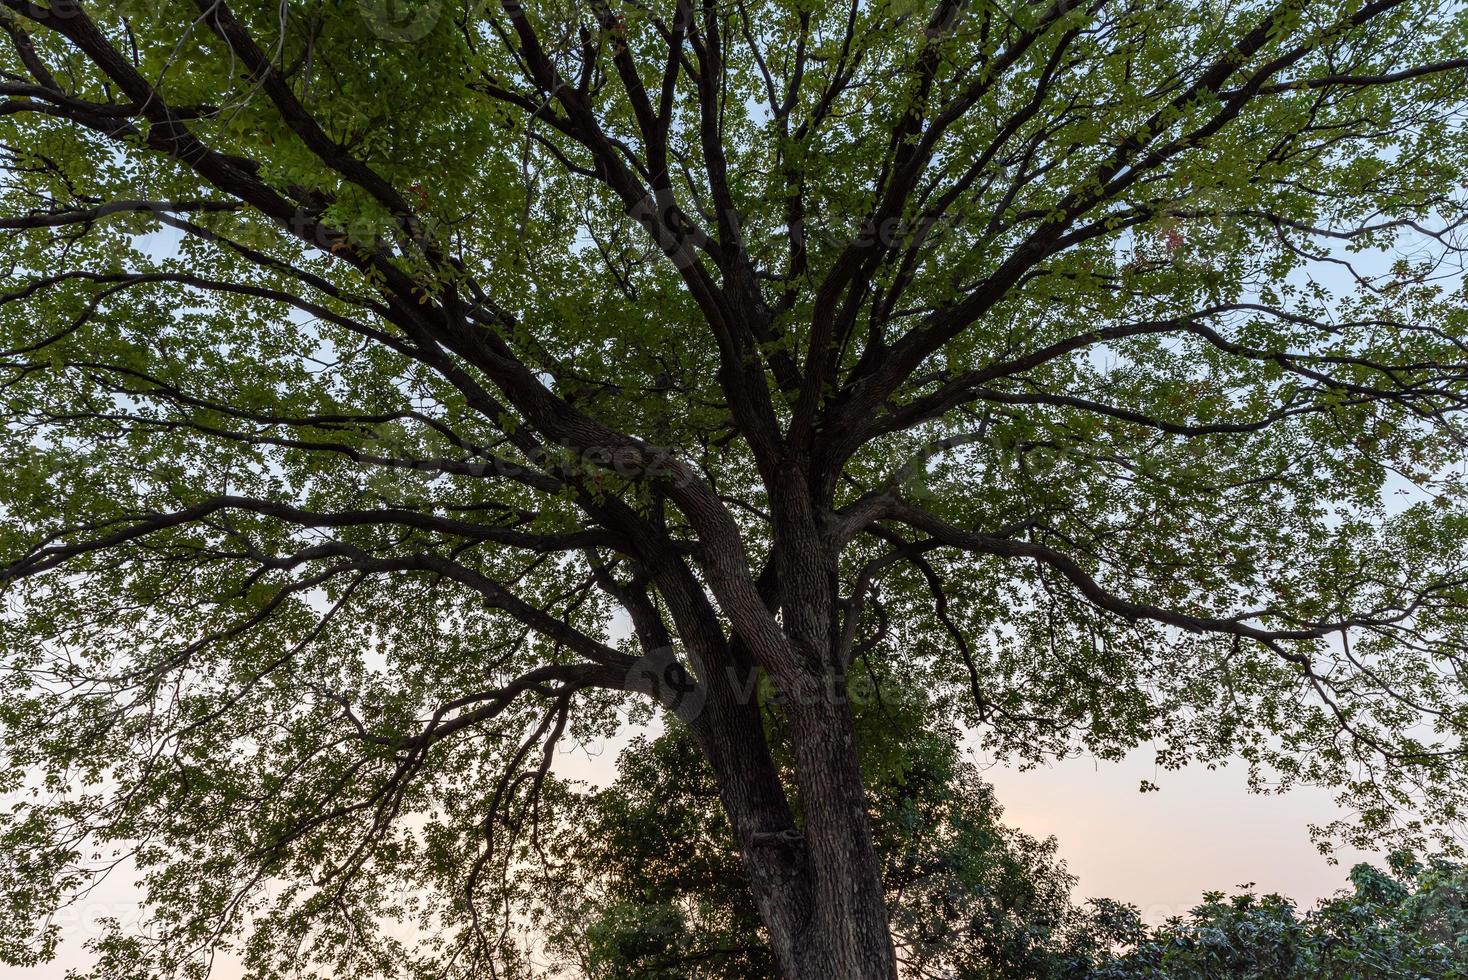 árboles altos con miradas extrañas en el parque foto